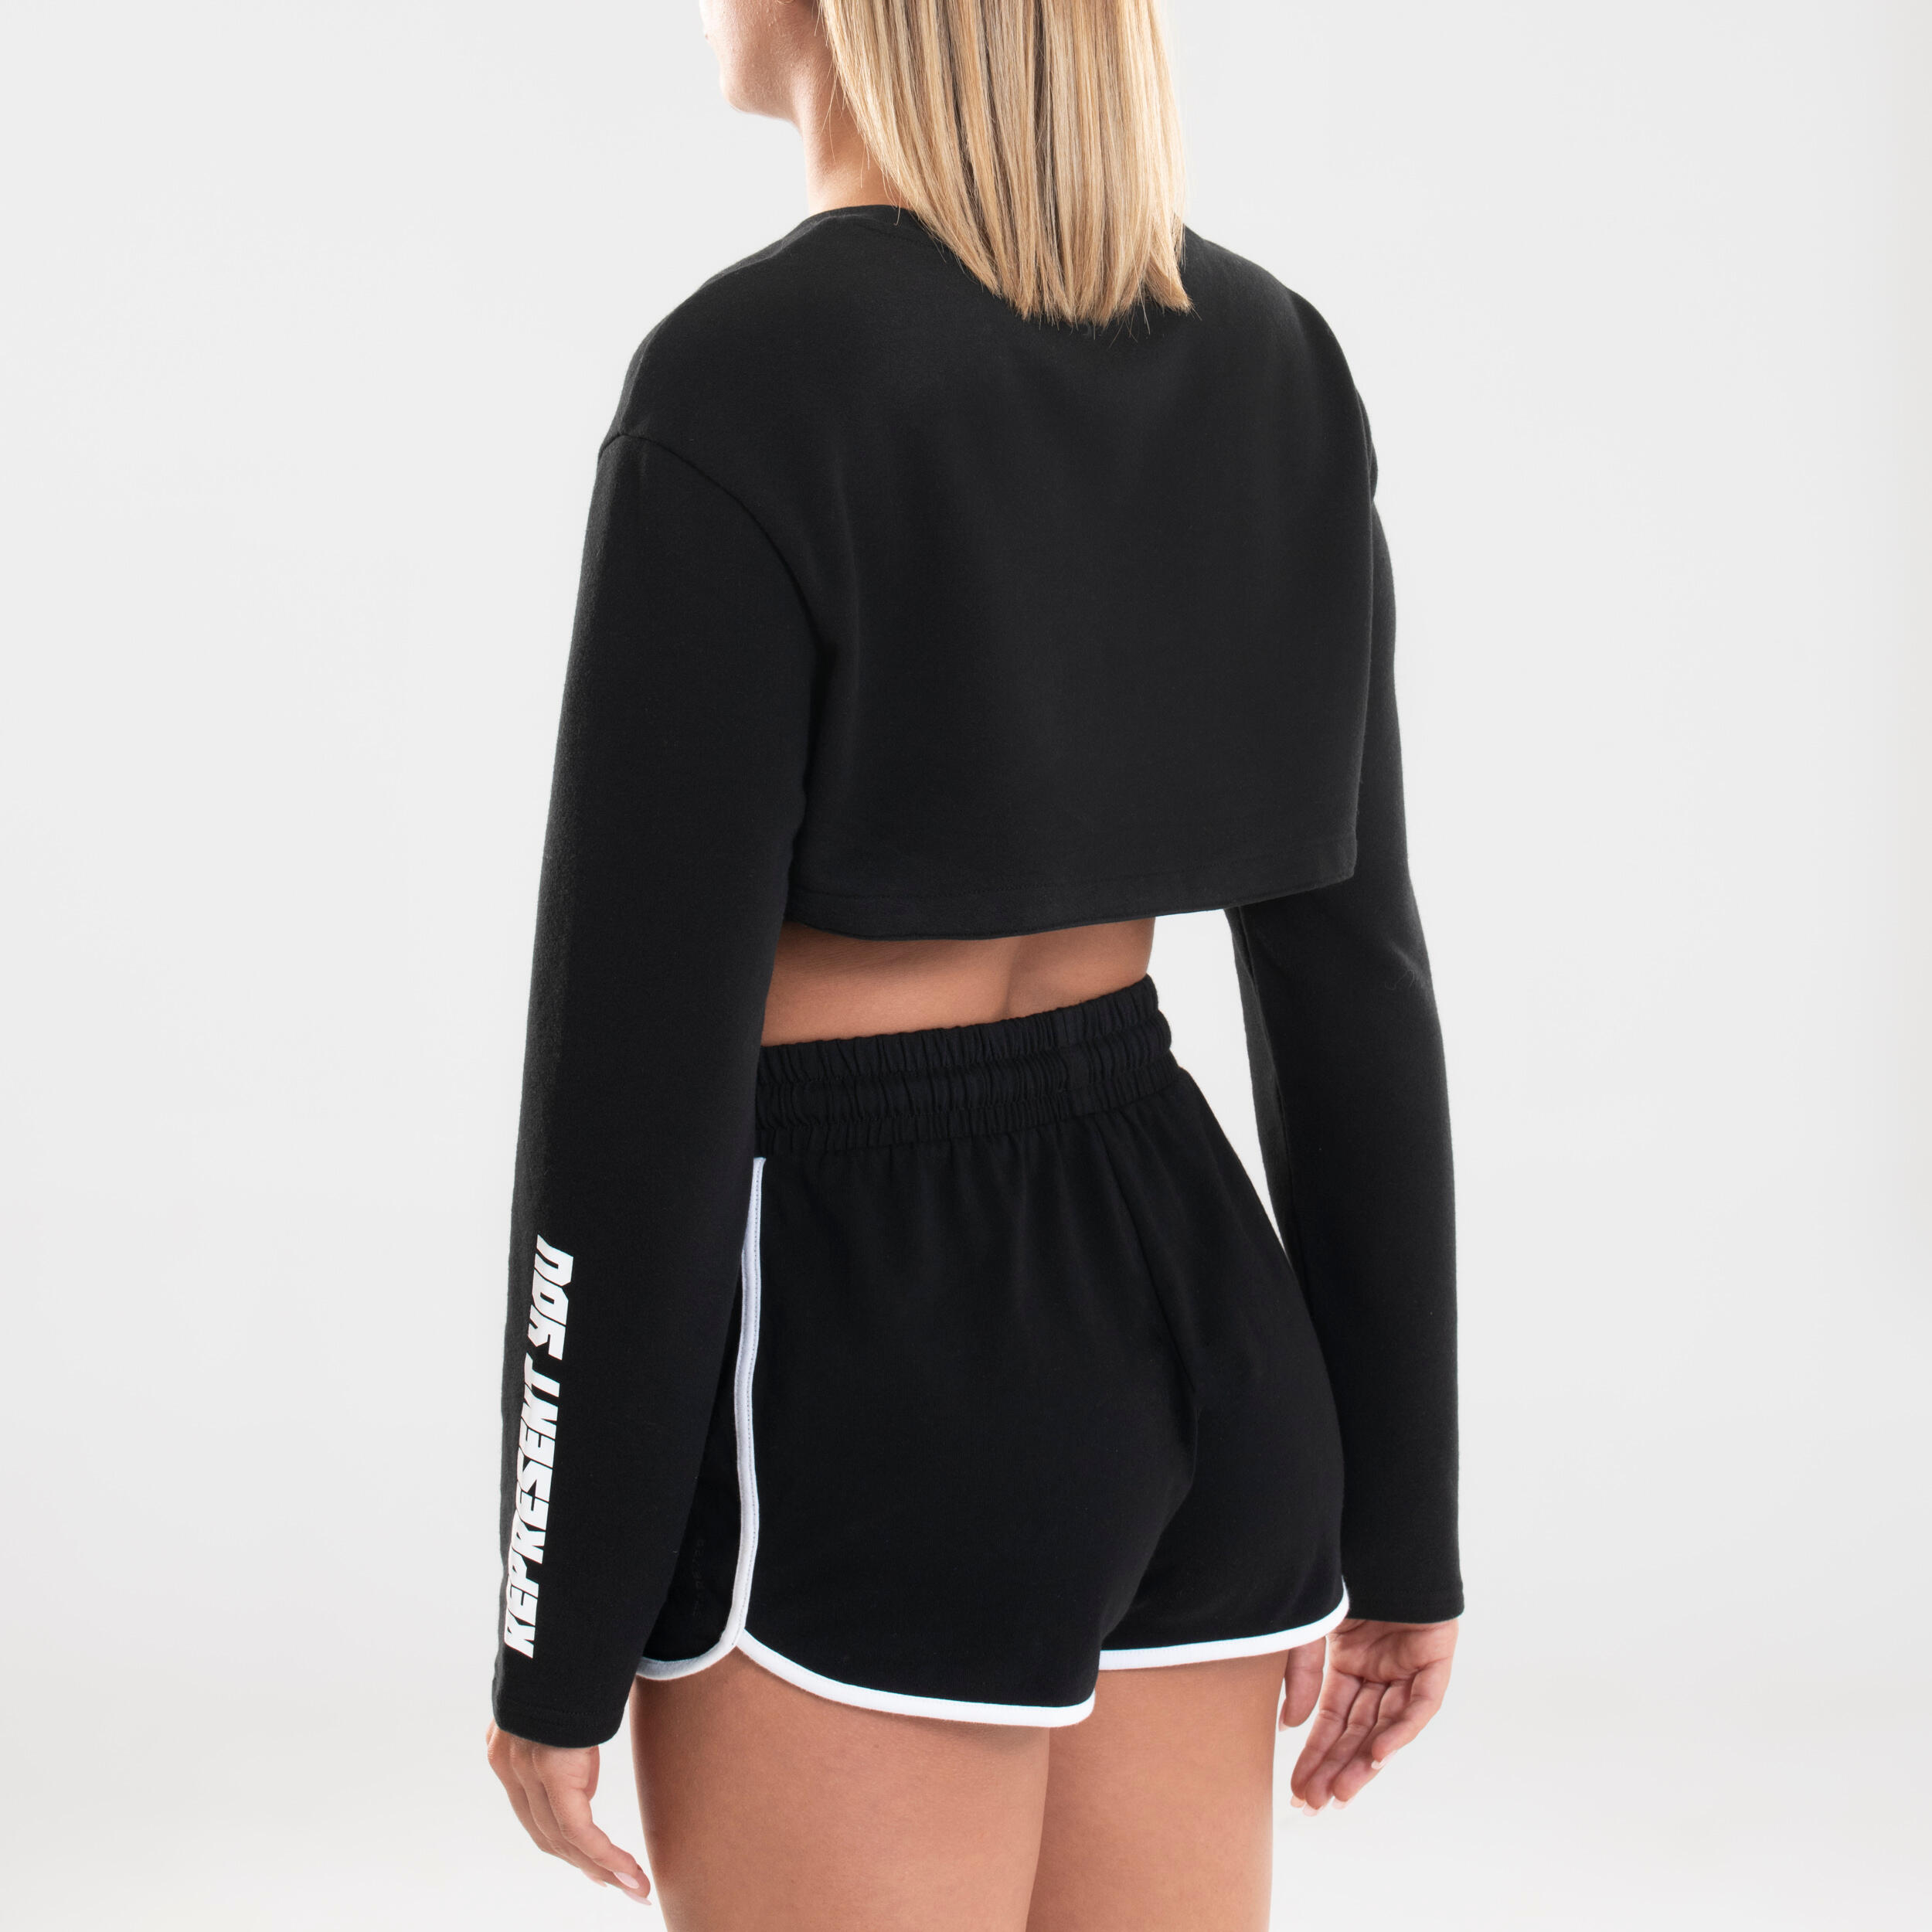 Women's Adjustable Urban Dance Sweatshirt - Black 6/9